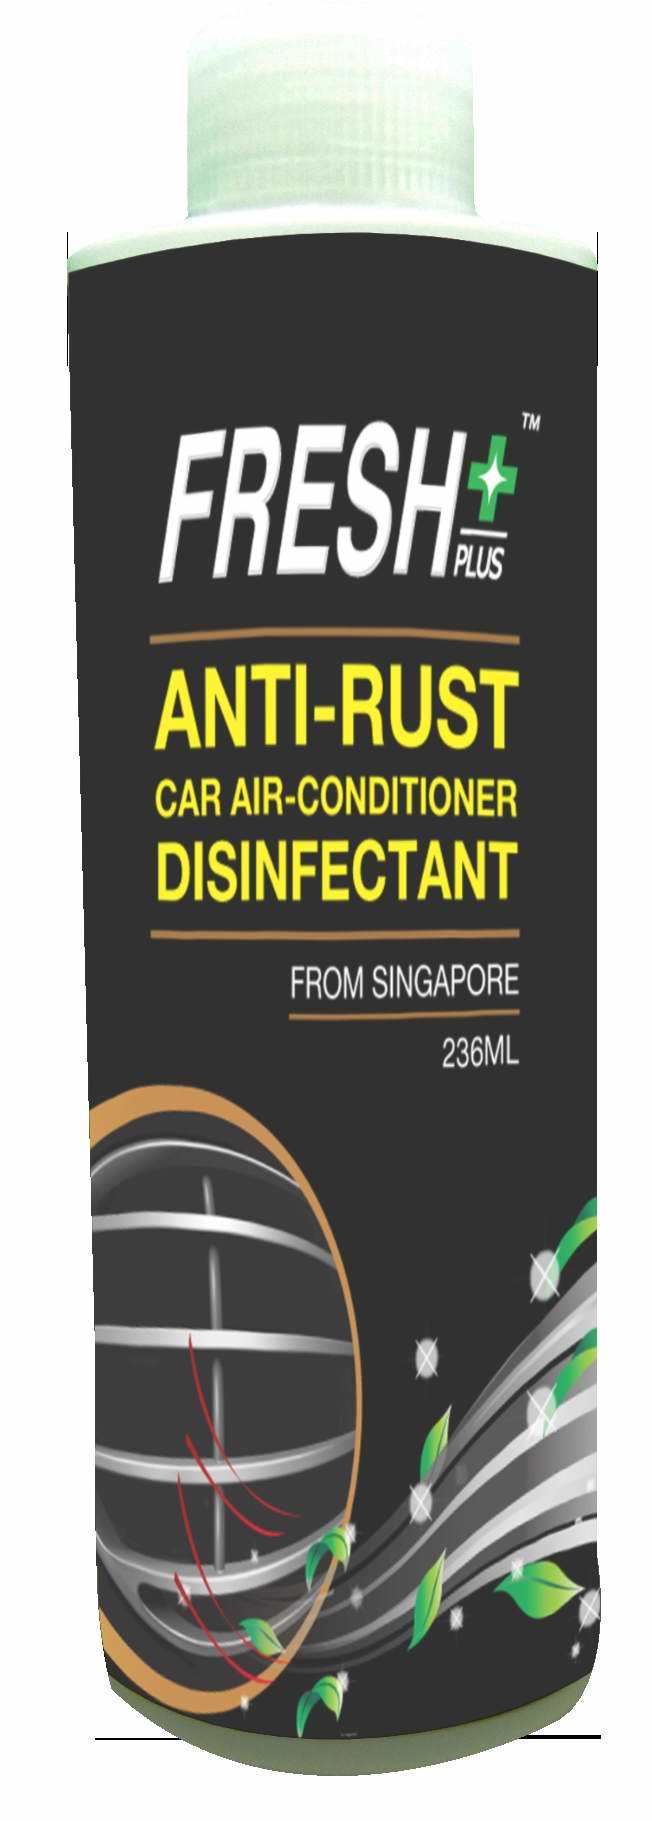 Anti-Rust Car Air-Condition Disinfectant